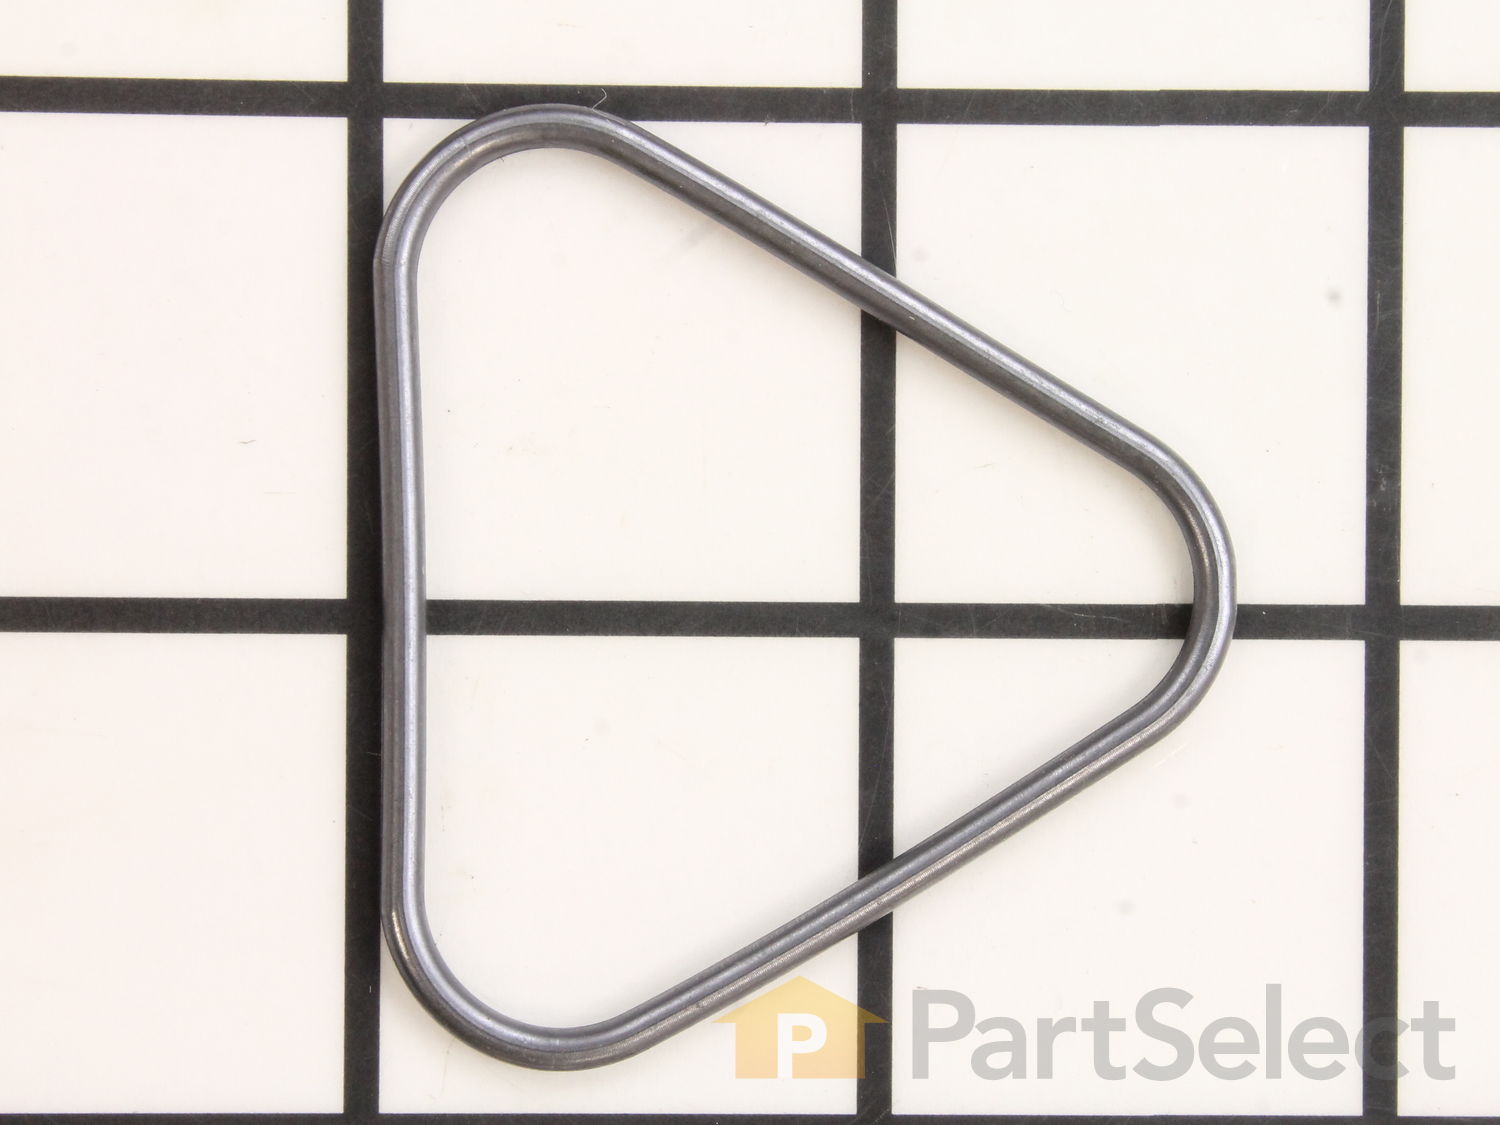 Karcher Pressure Washer OEM O-Ring Seal # 9.081-422.0 639440901969